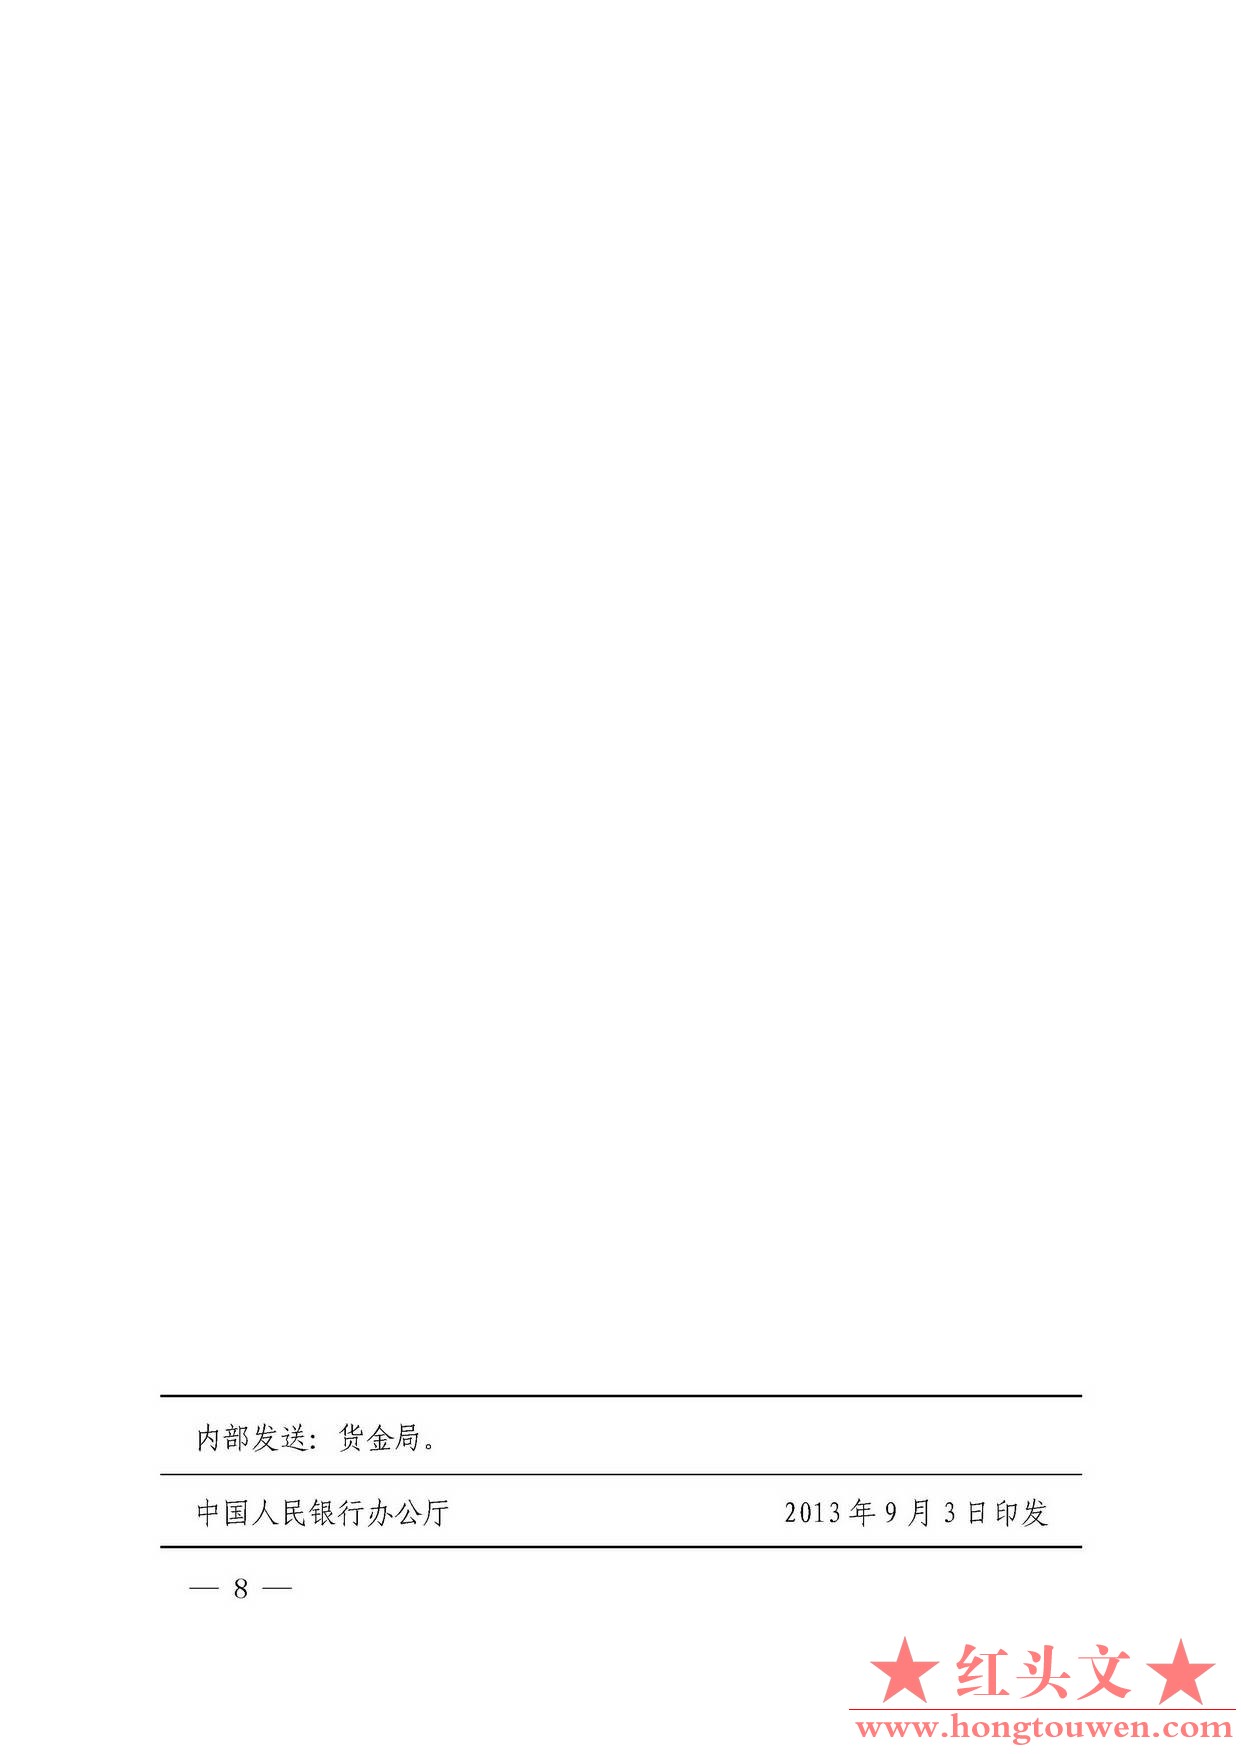 银发[2013]197号-中国人民银行办公厅关于进一步明确全额清分和冠字号码查询工作有关事.jpg